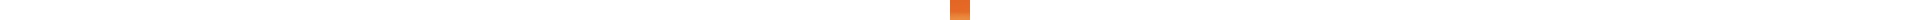 Crayon de couleur DERWENT Inktense DERWENT Inktense:0250-orange de cadmium